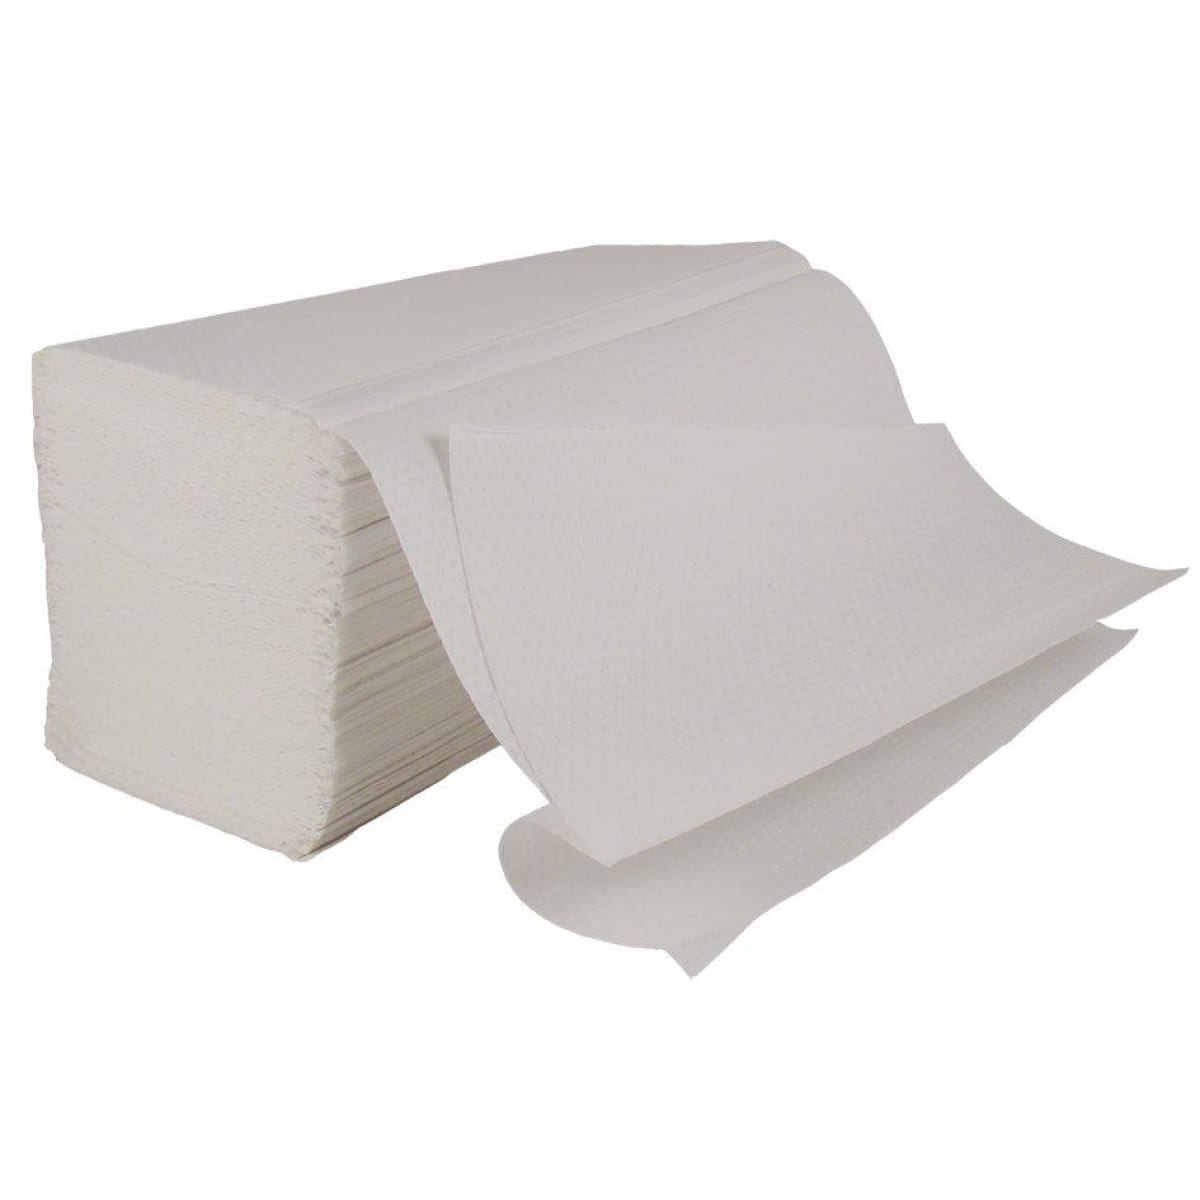 buy paper hand towels online